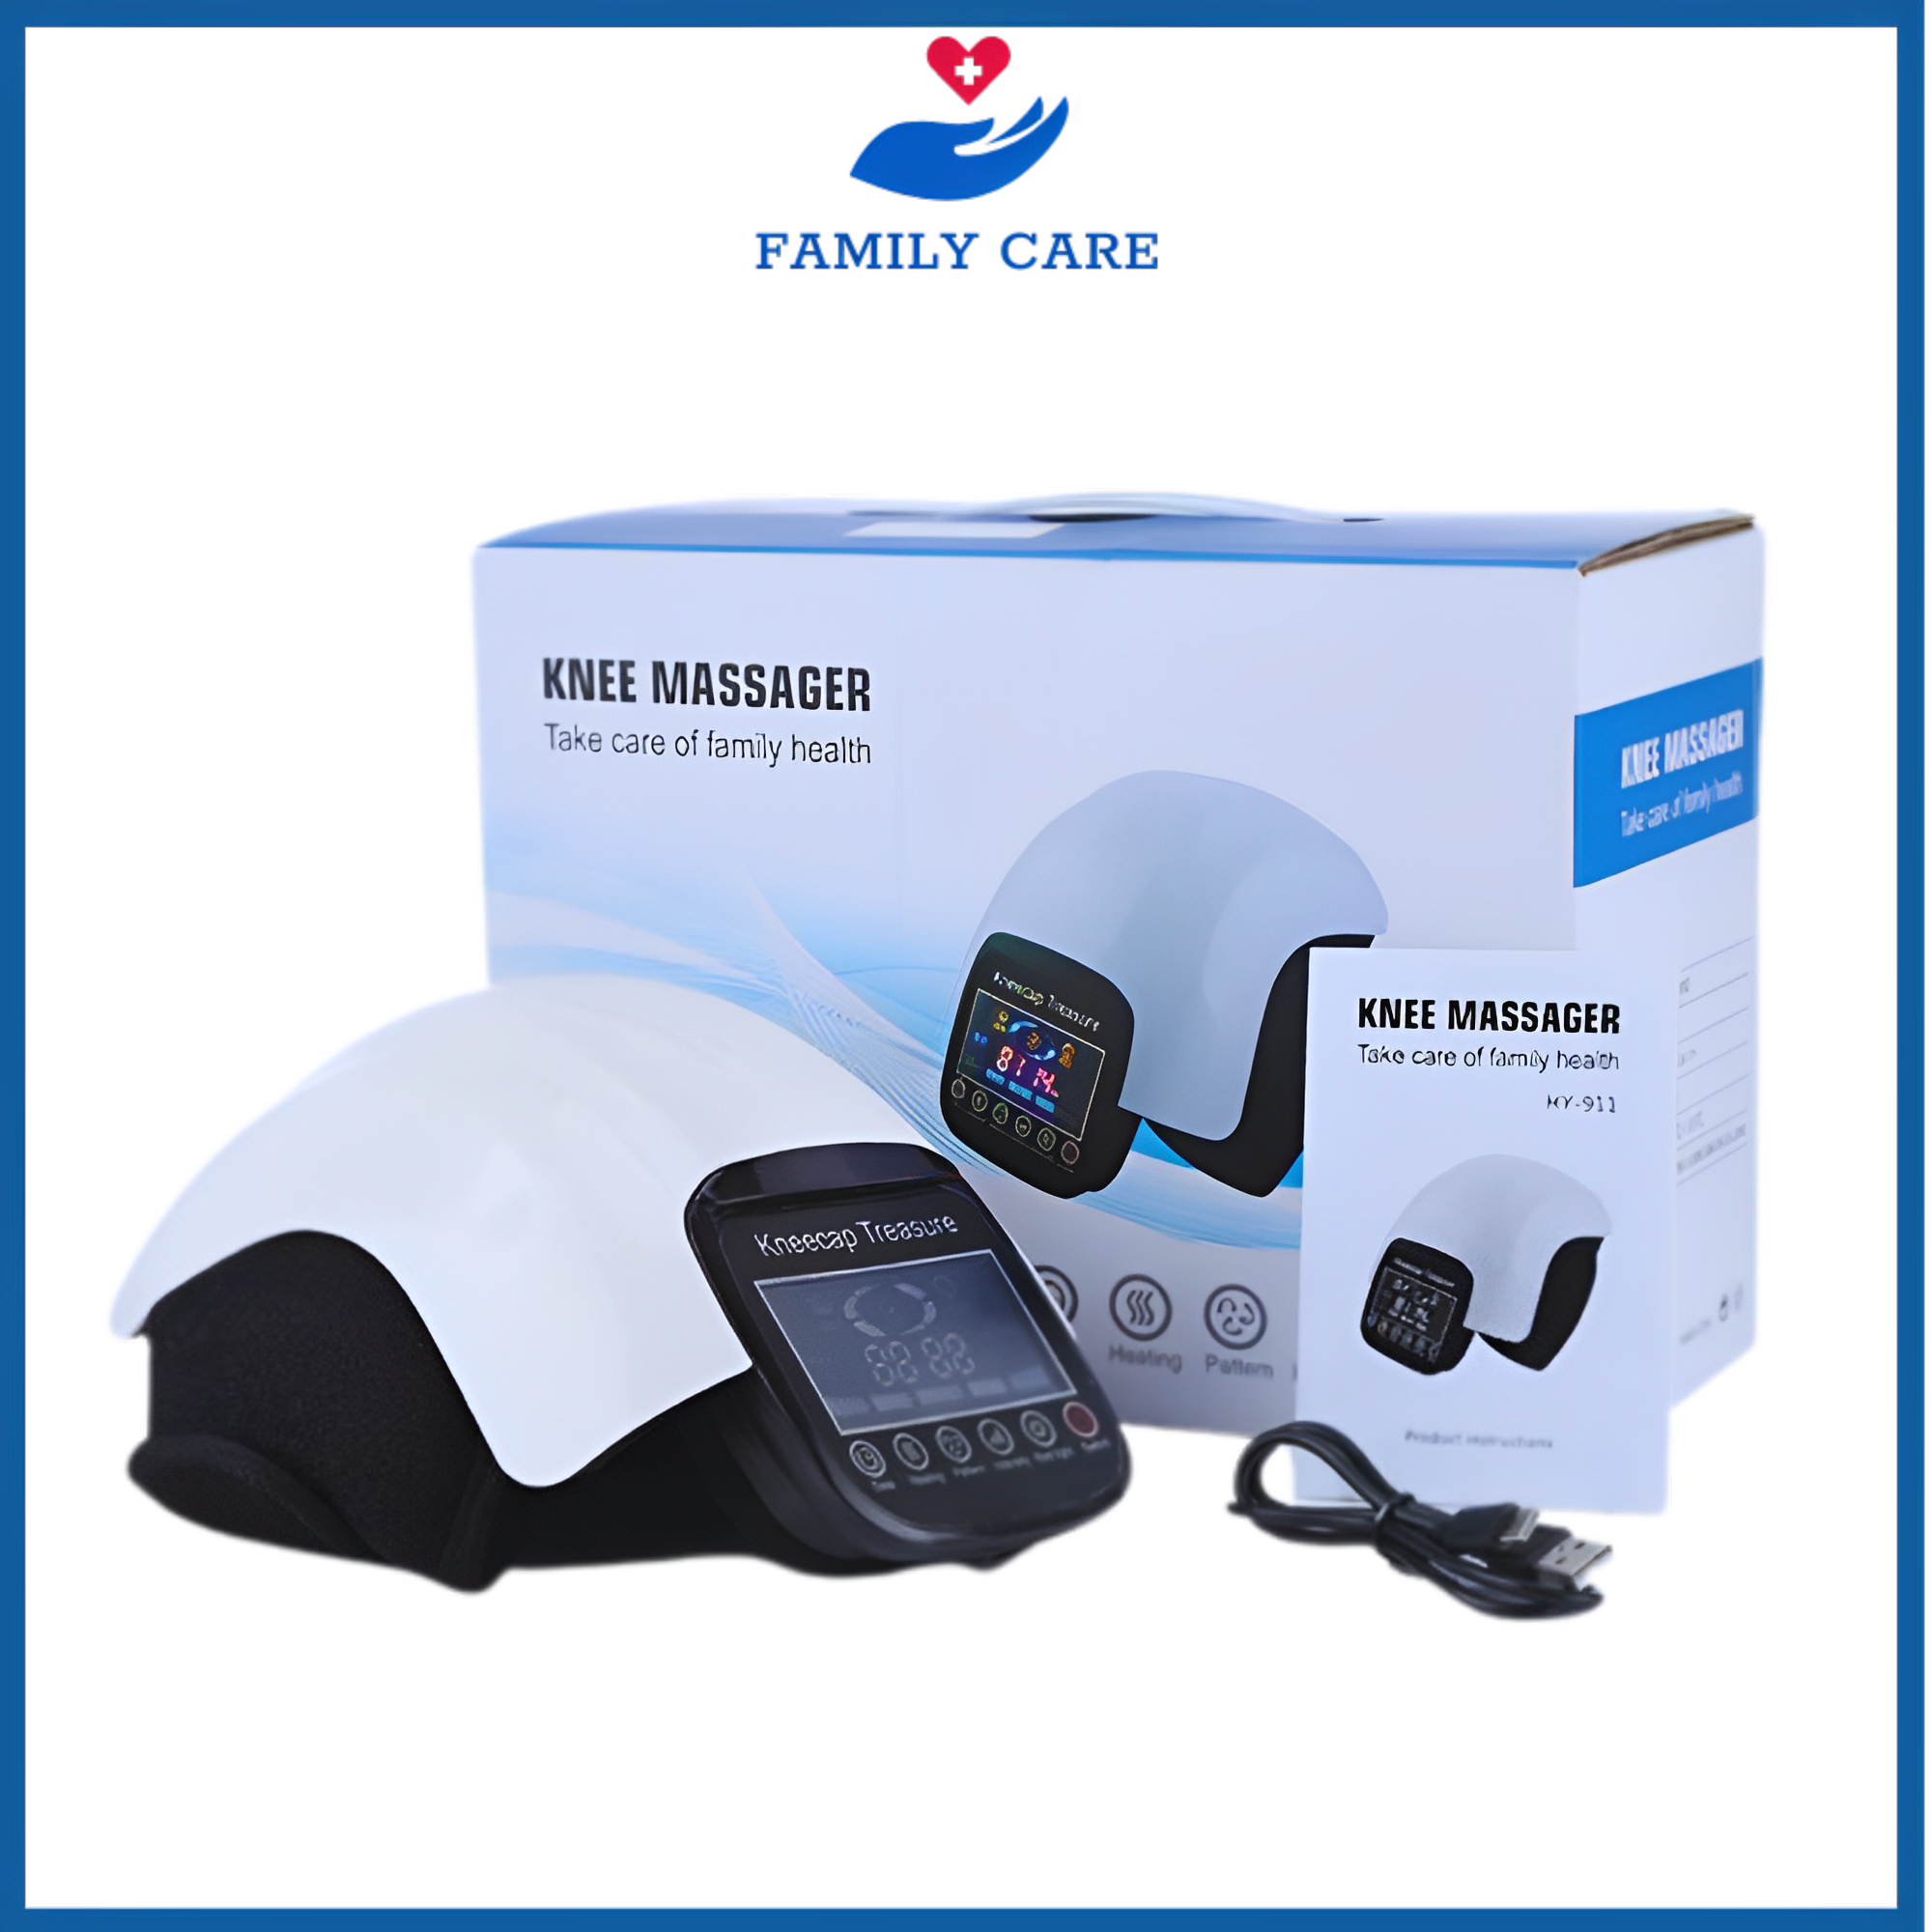 Máy massage đầu gối hồng ngoại, thiết bị massage đầu gối cao cấp,máy massage đầu gối không dây hỗ trợ giảm đau khớp gối, khuỷu tay và bả vai bằng công nghệ rung massage bóp khí kết hợp nhiệt độ